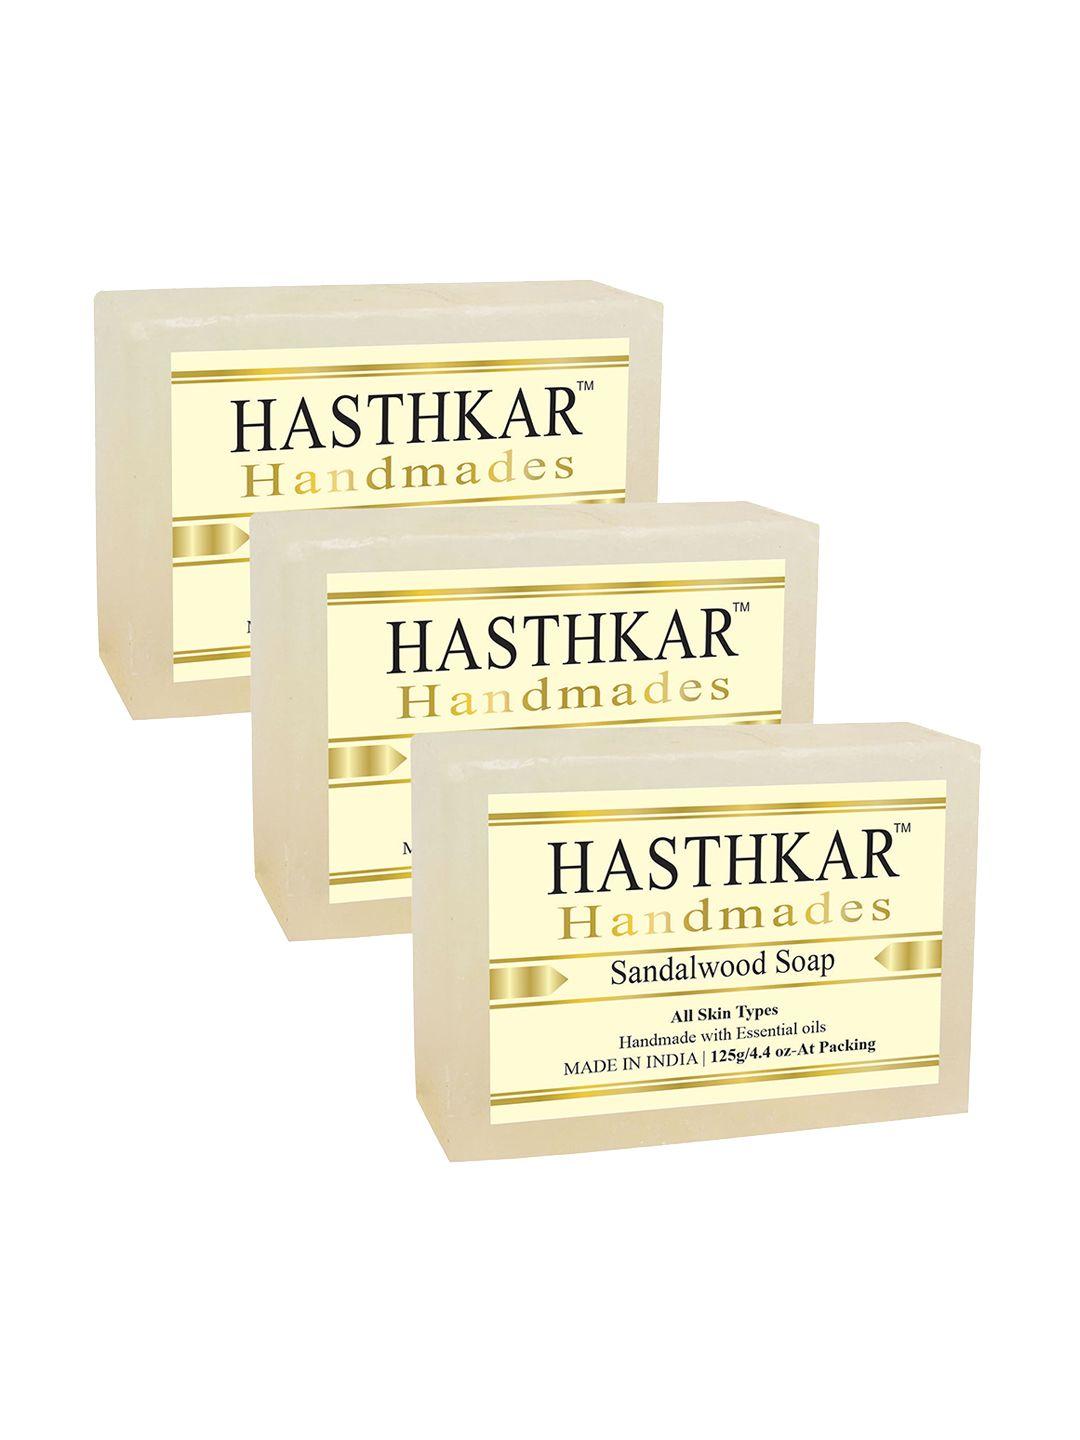 hasthkar set of 3 handmade sandalwood soaps for all skin types - 125 g each